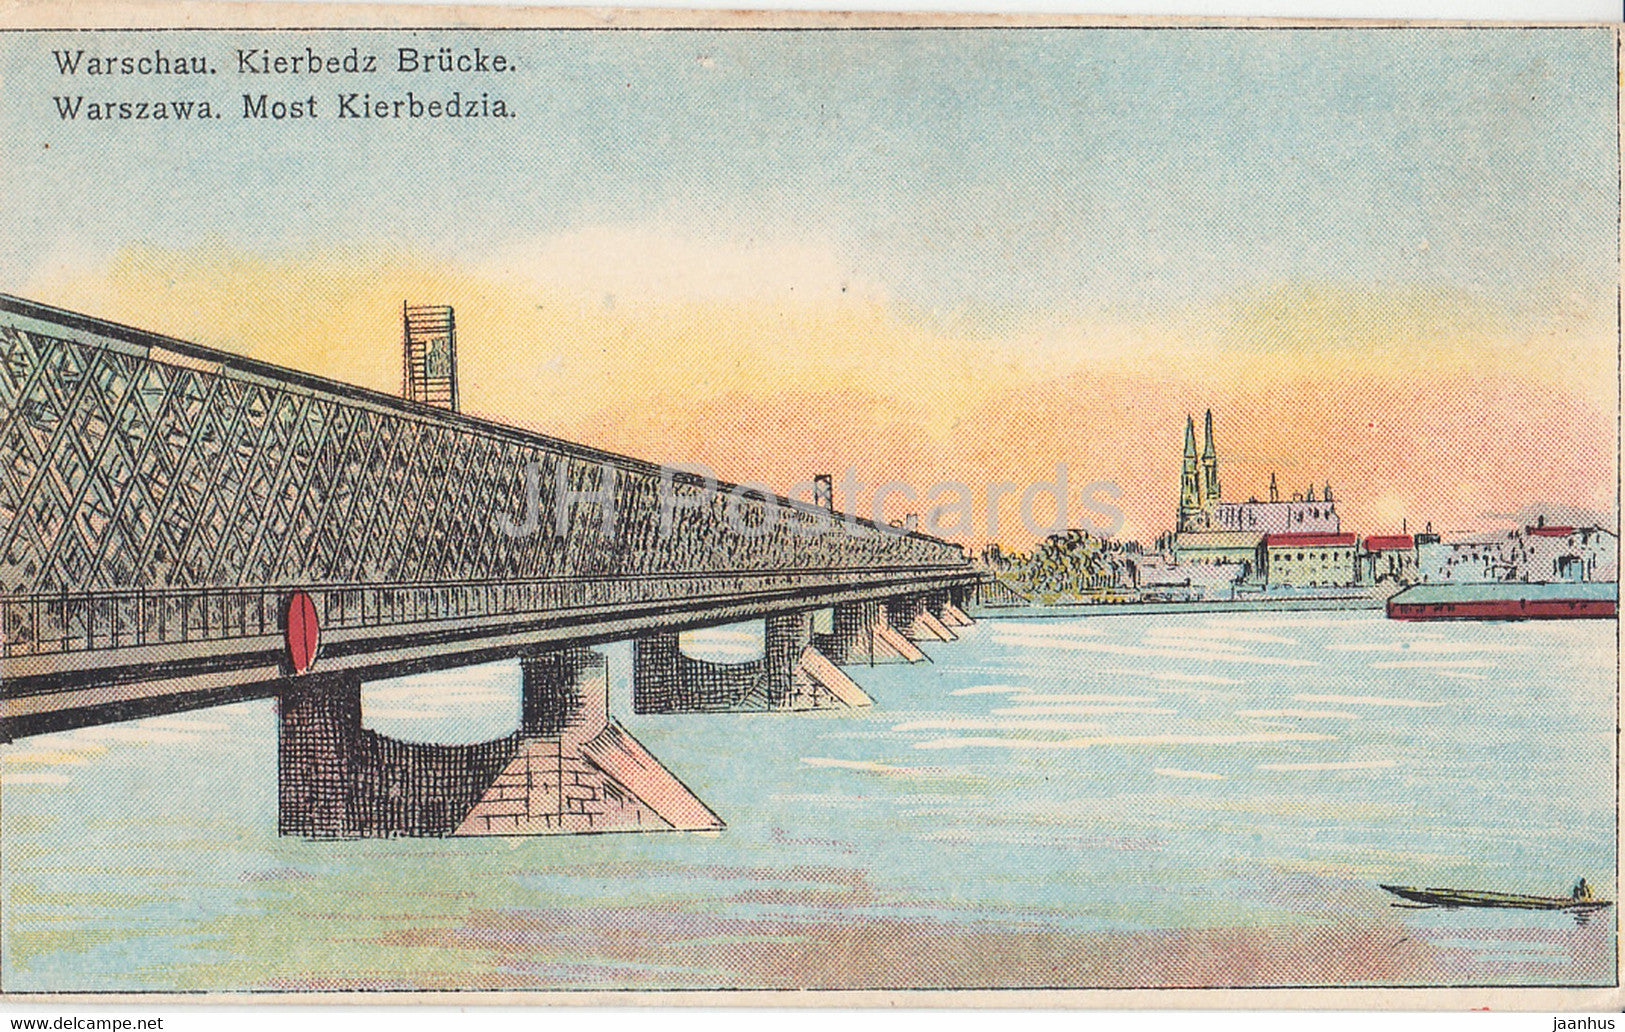 Warschau - Kierbedz Brucke - Warschau - Most Kierbedzia - bridge - old postcard - Poland - unused - JH Postcards